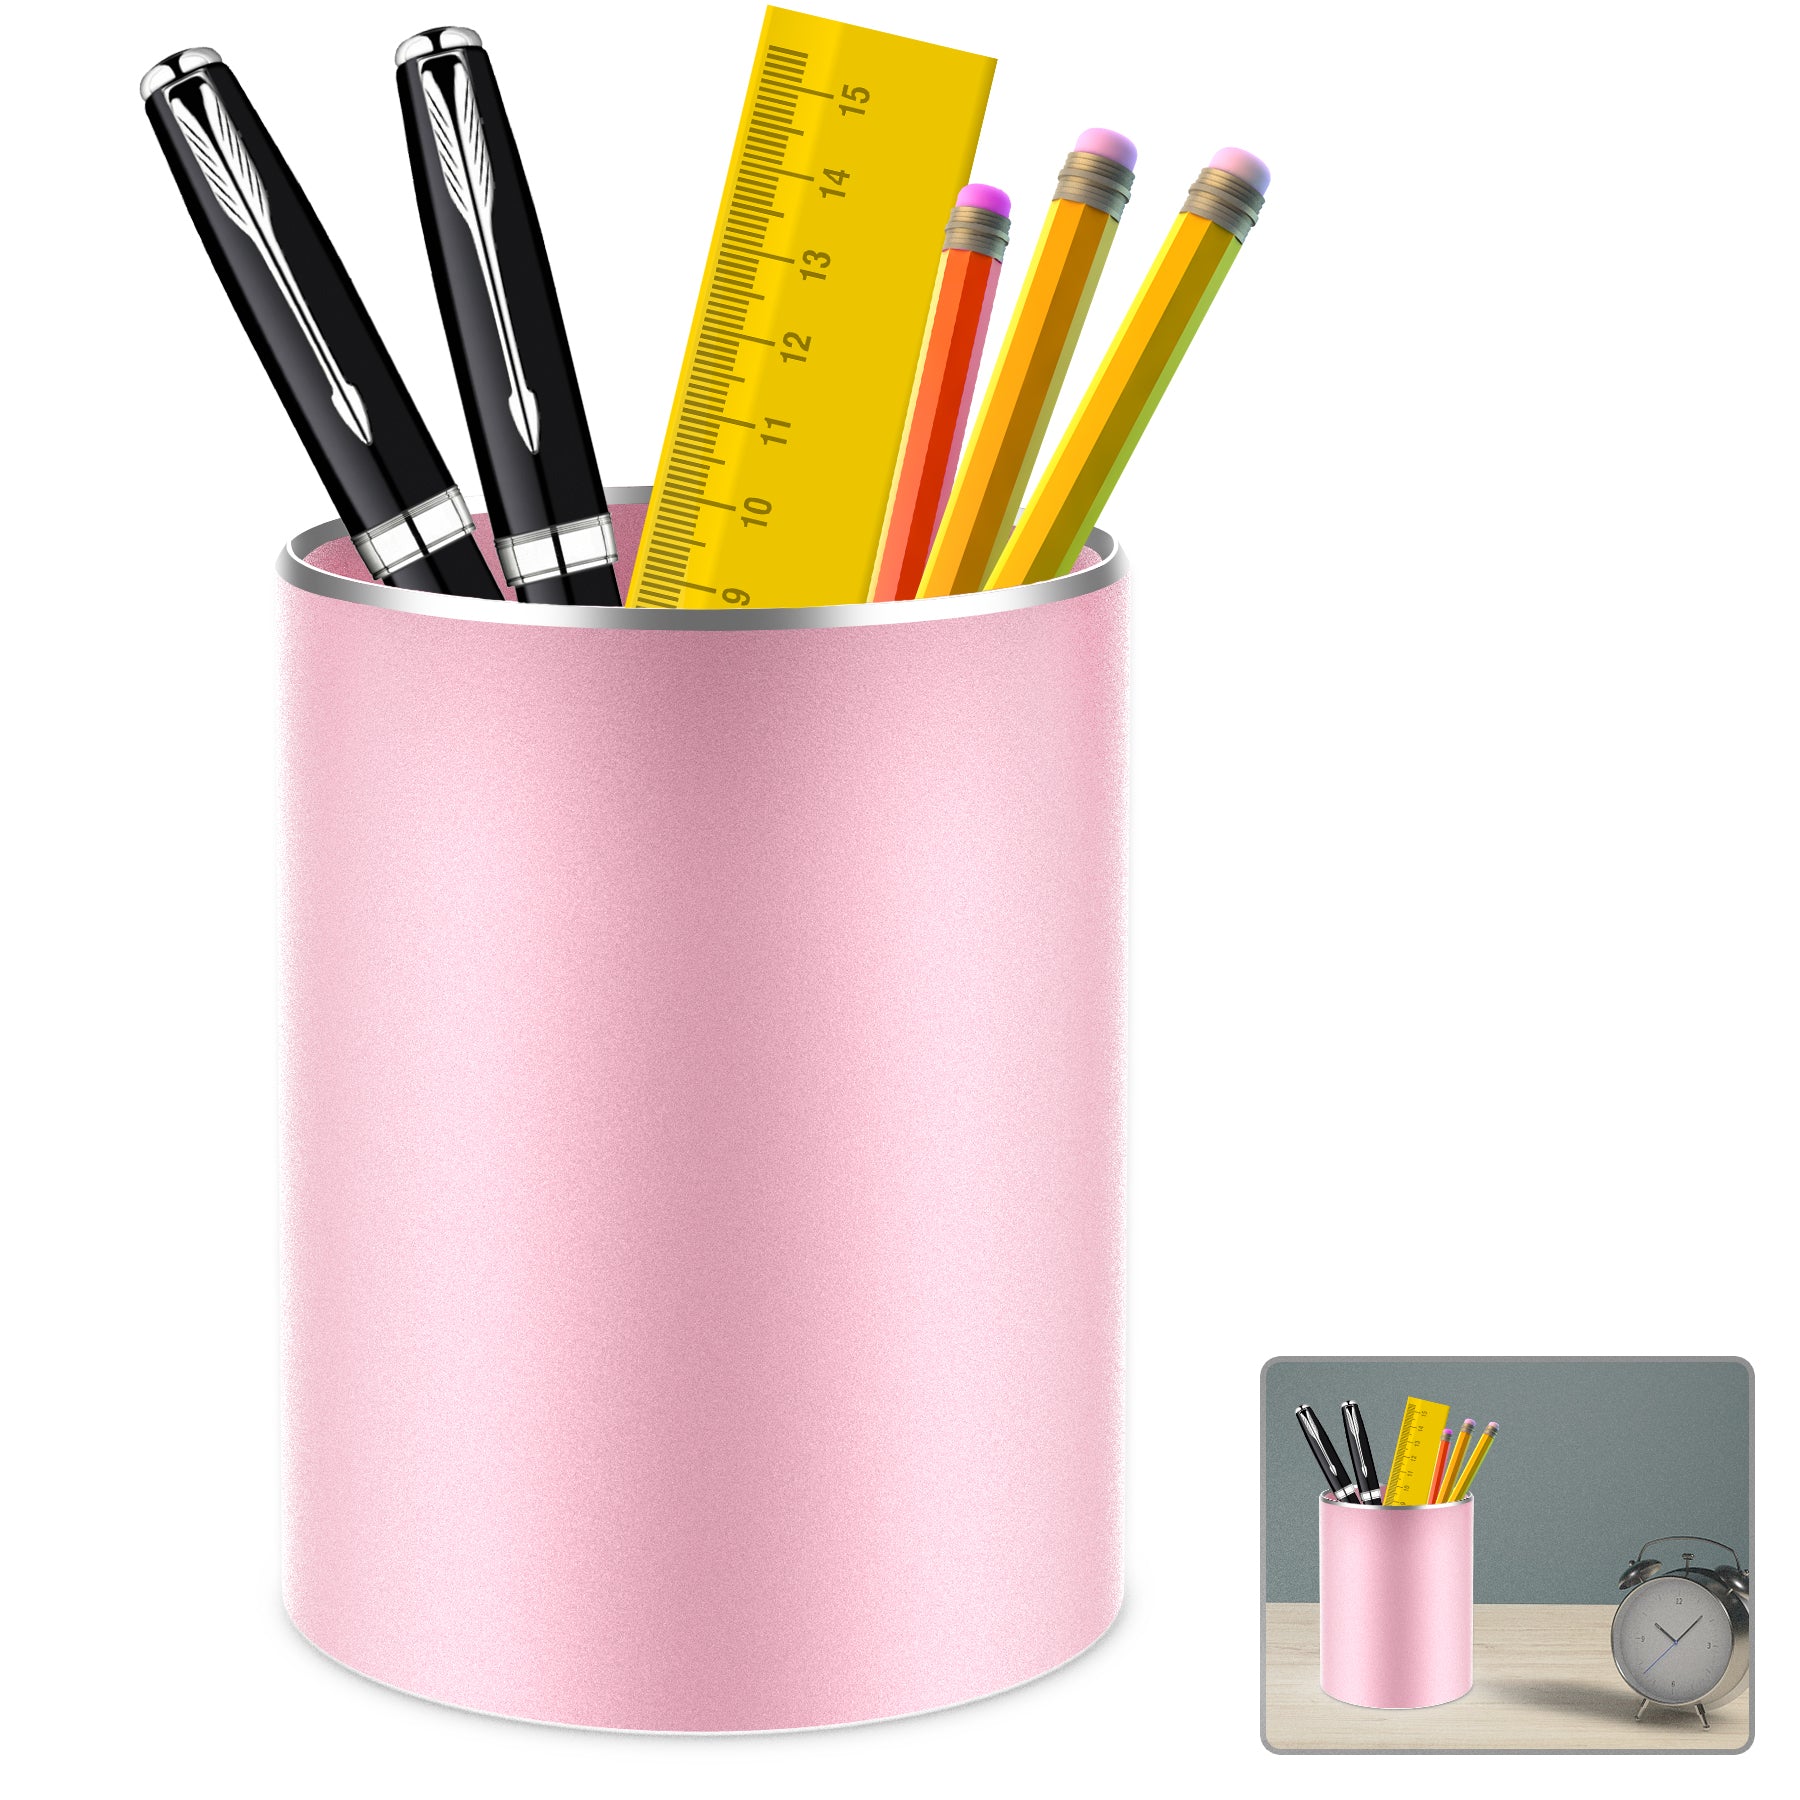 Giecy Pen Holder Pencil Holder for Desk Metal Desk Pen Cup Holder Makeup Brush Holder, Desktop Pen Organizer and Pencil Cup for Office,3.93*3.14inch Rose Gold